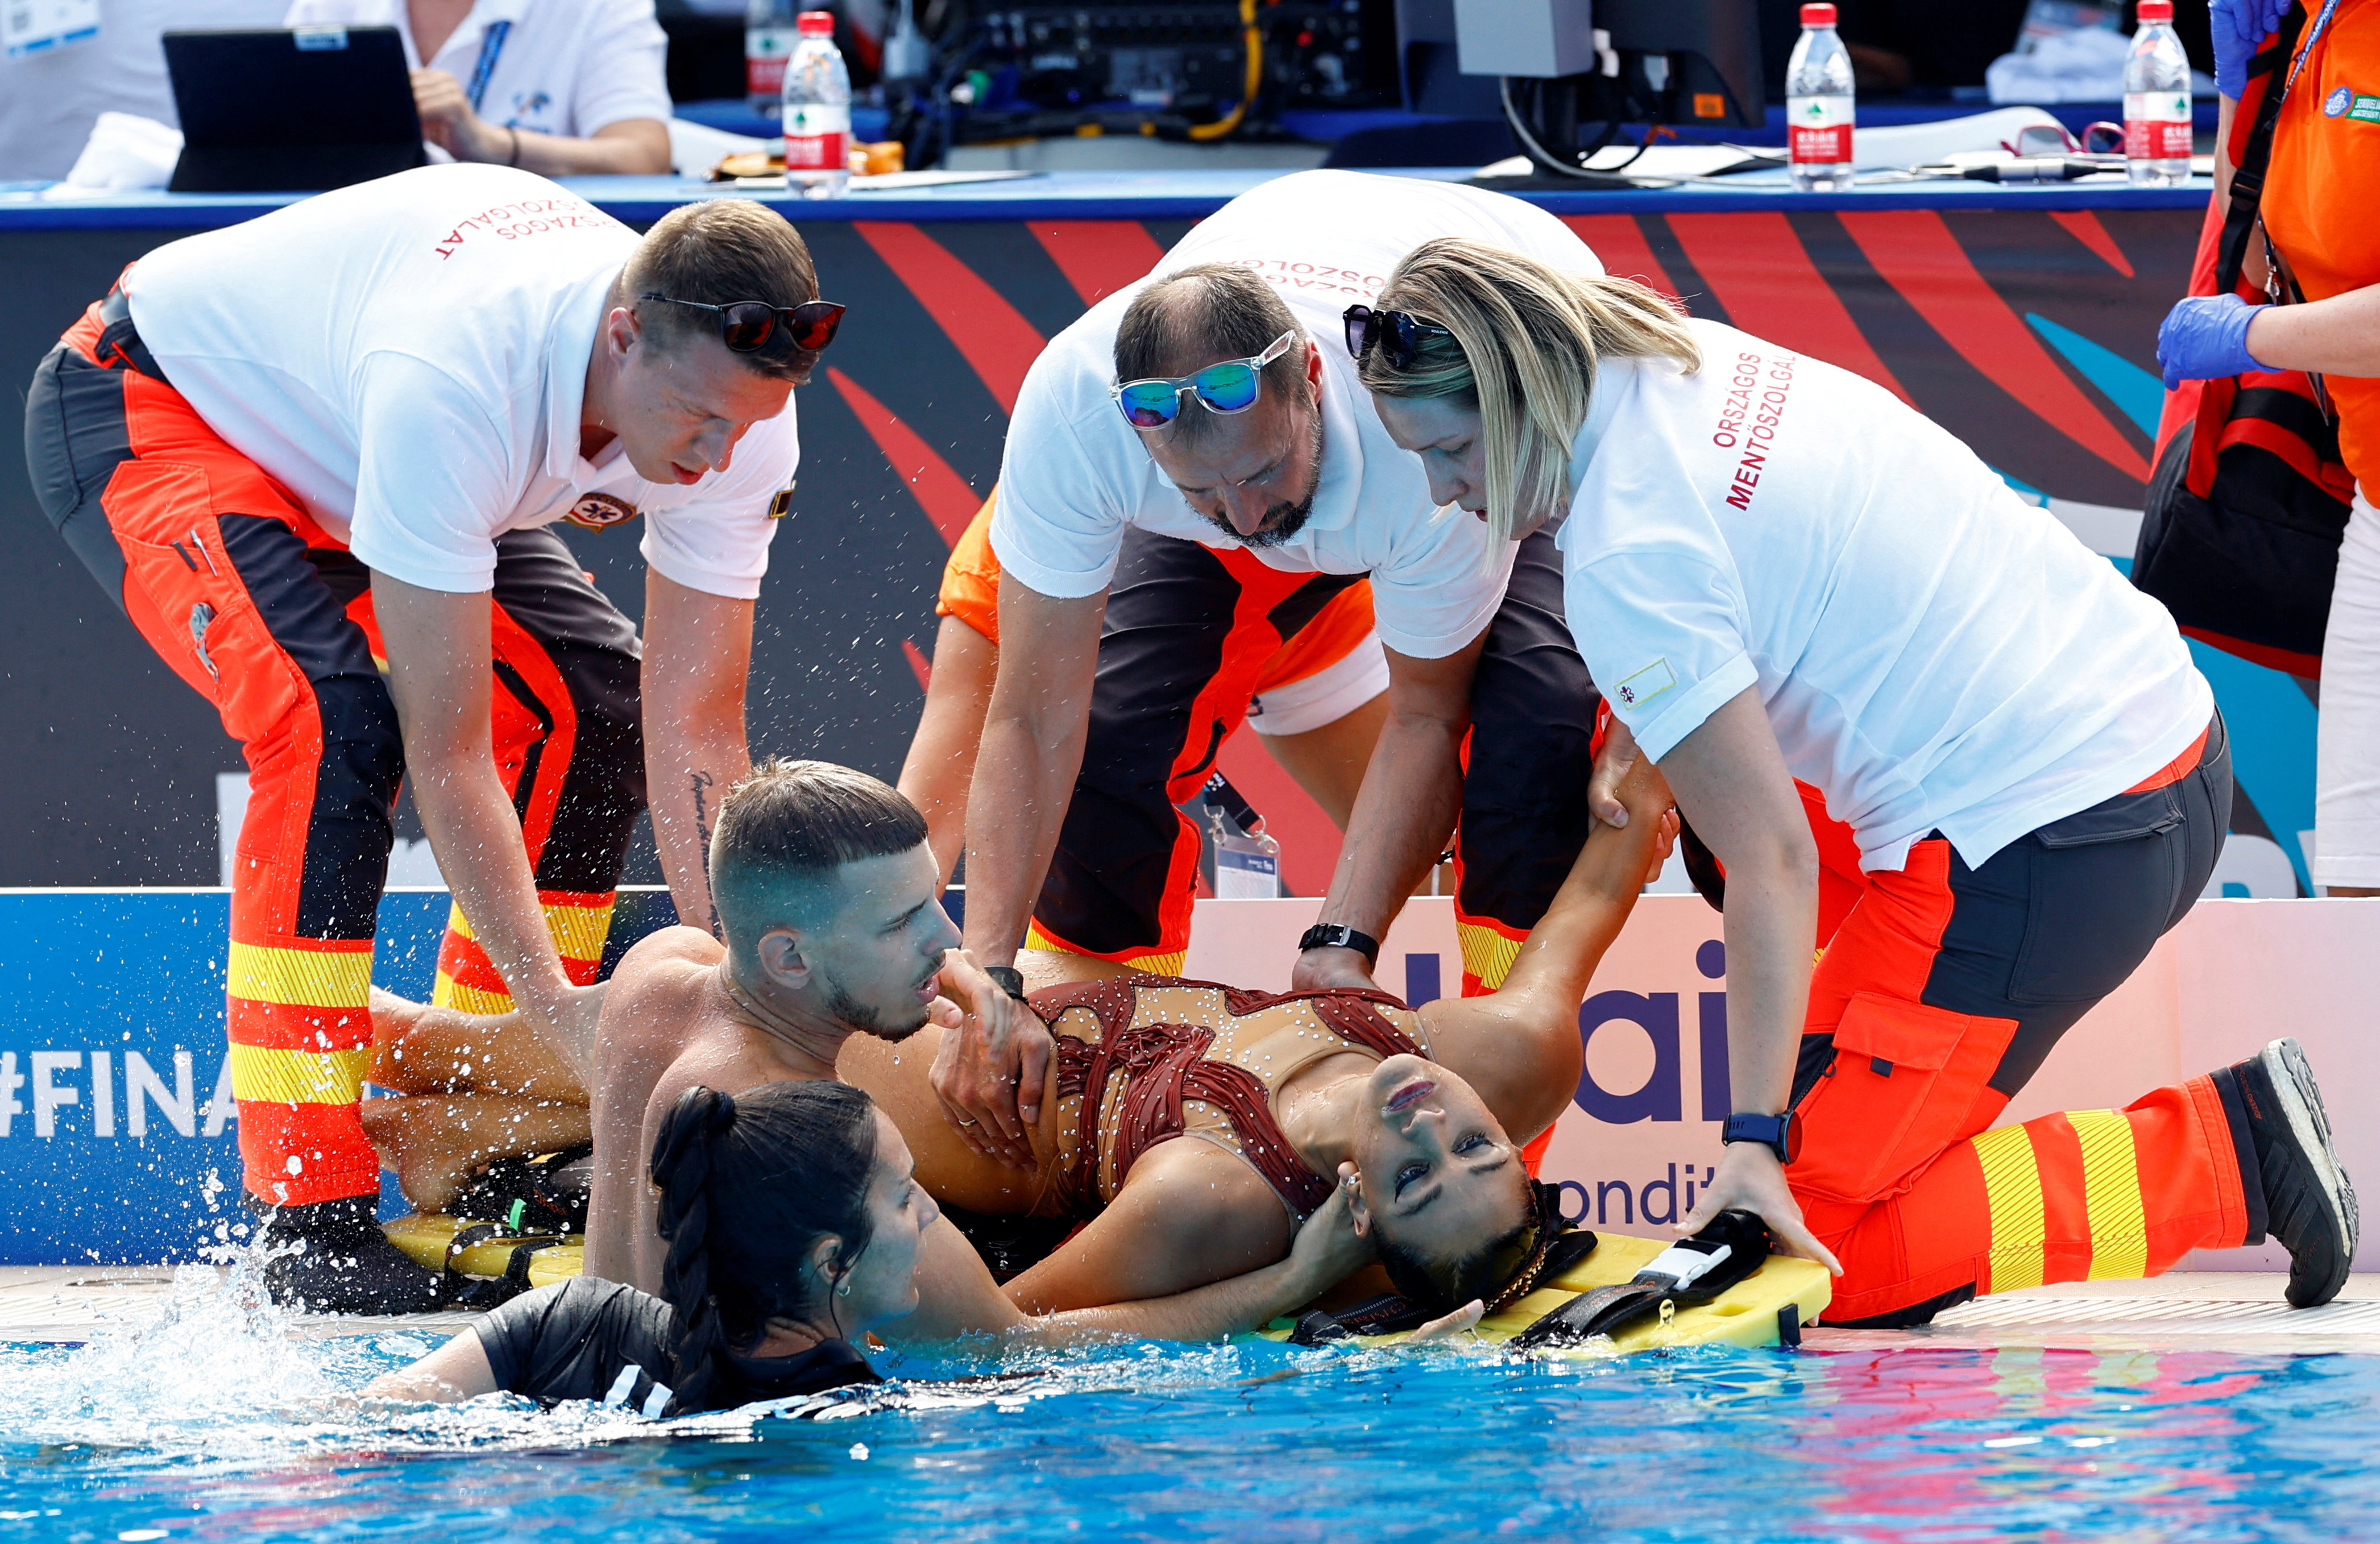 La nadadora de raíces mexicanas fue reanimada luego de ser sacada del agua (Foto: Lisa Leutner/REUTERS)